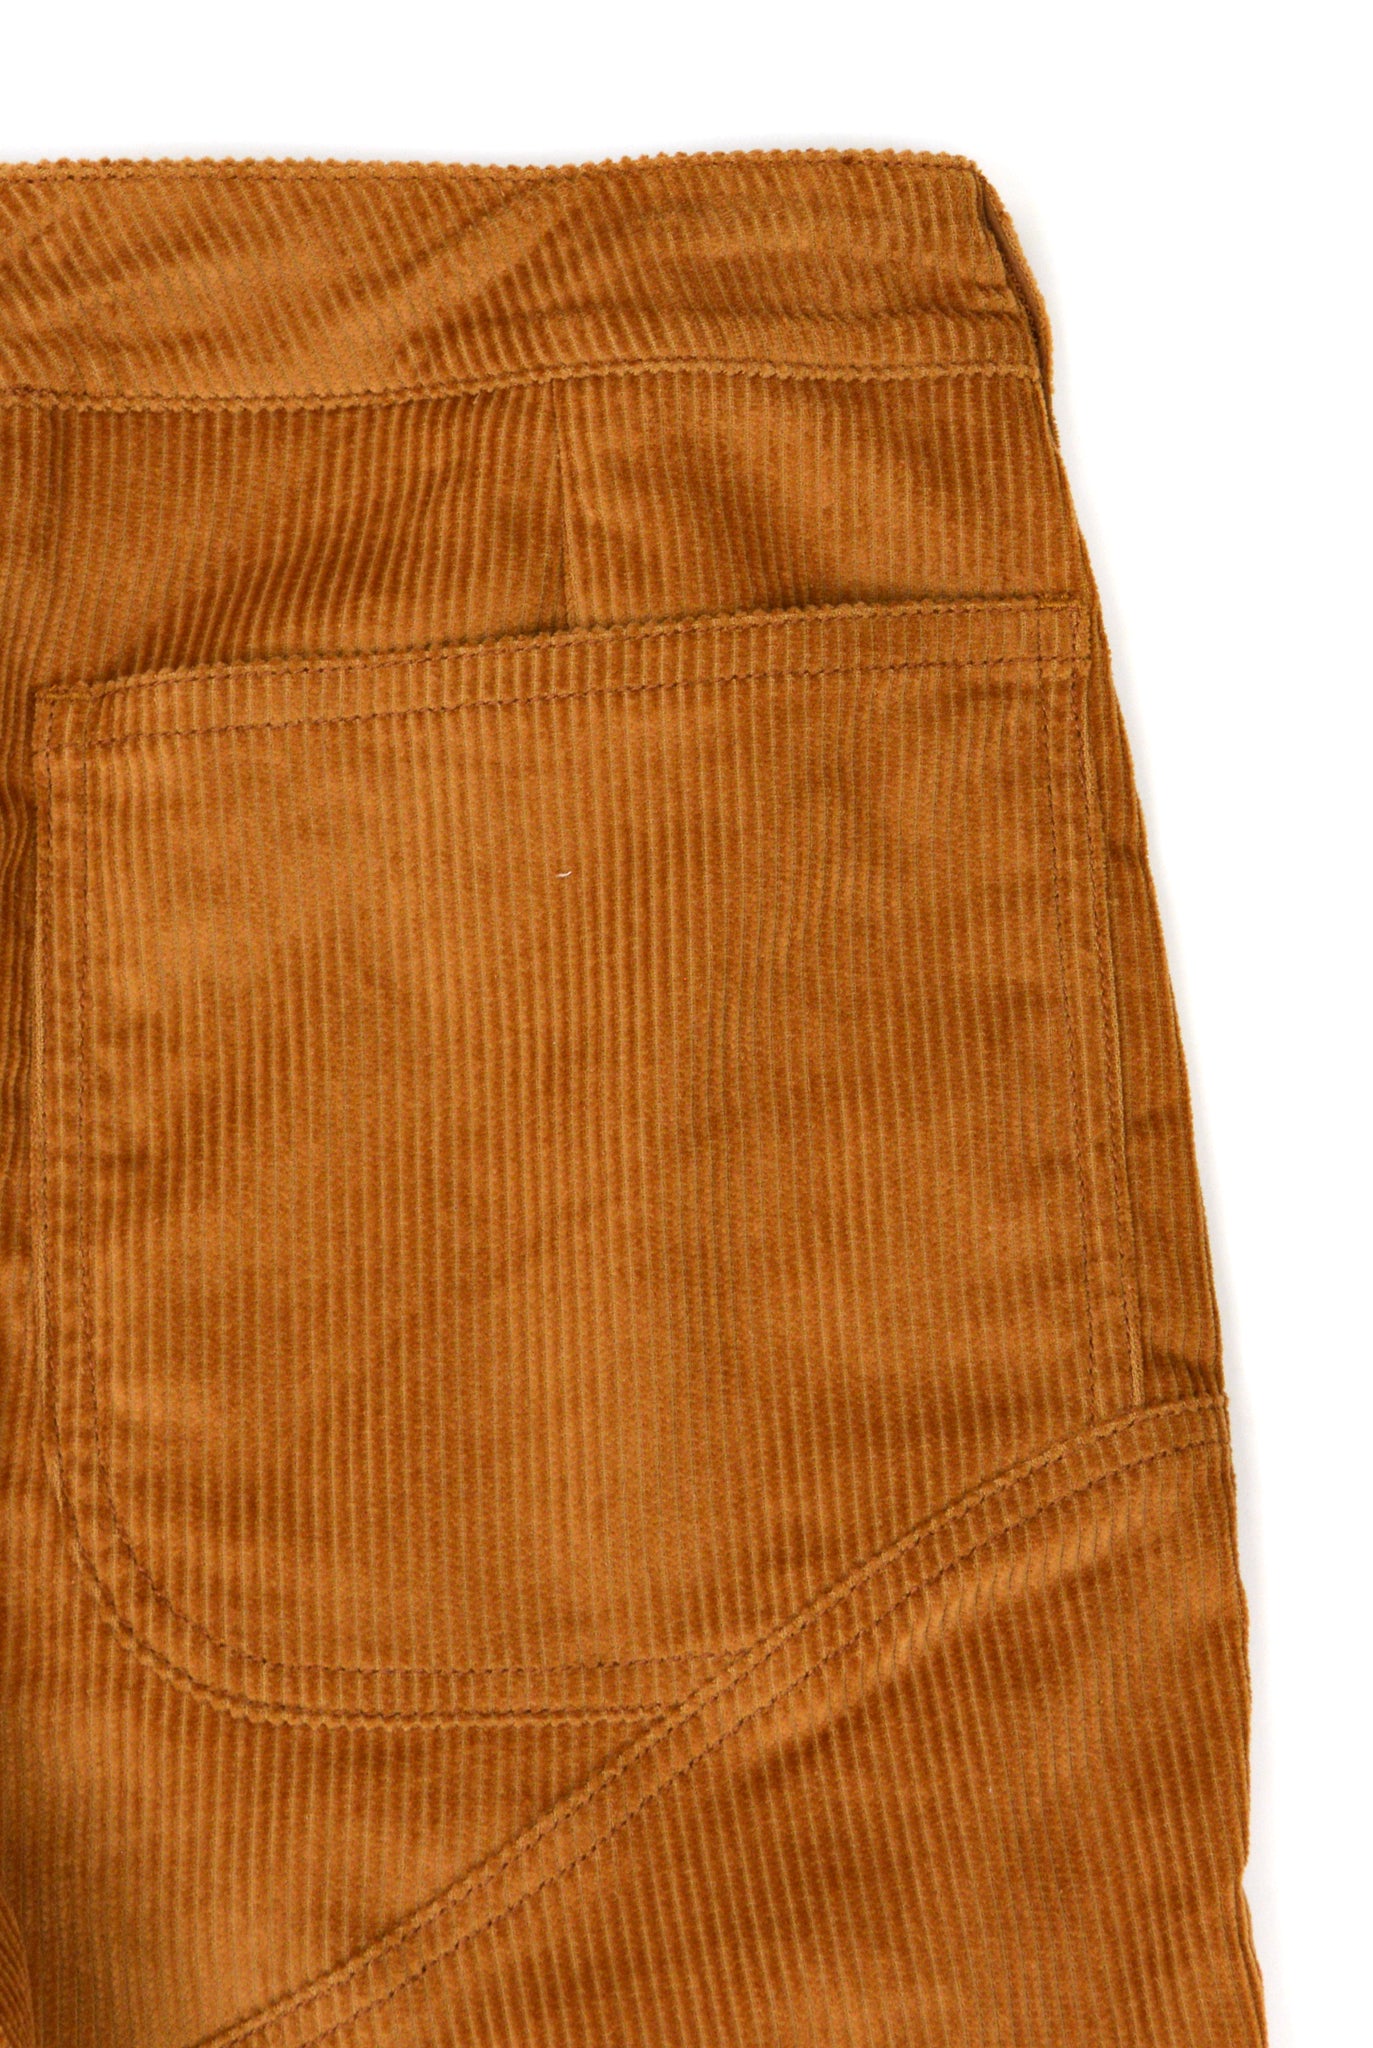 Telfar 3-Panel Boot-Cut Corduroy Pants, Brown